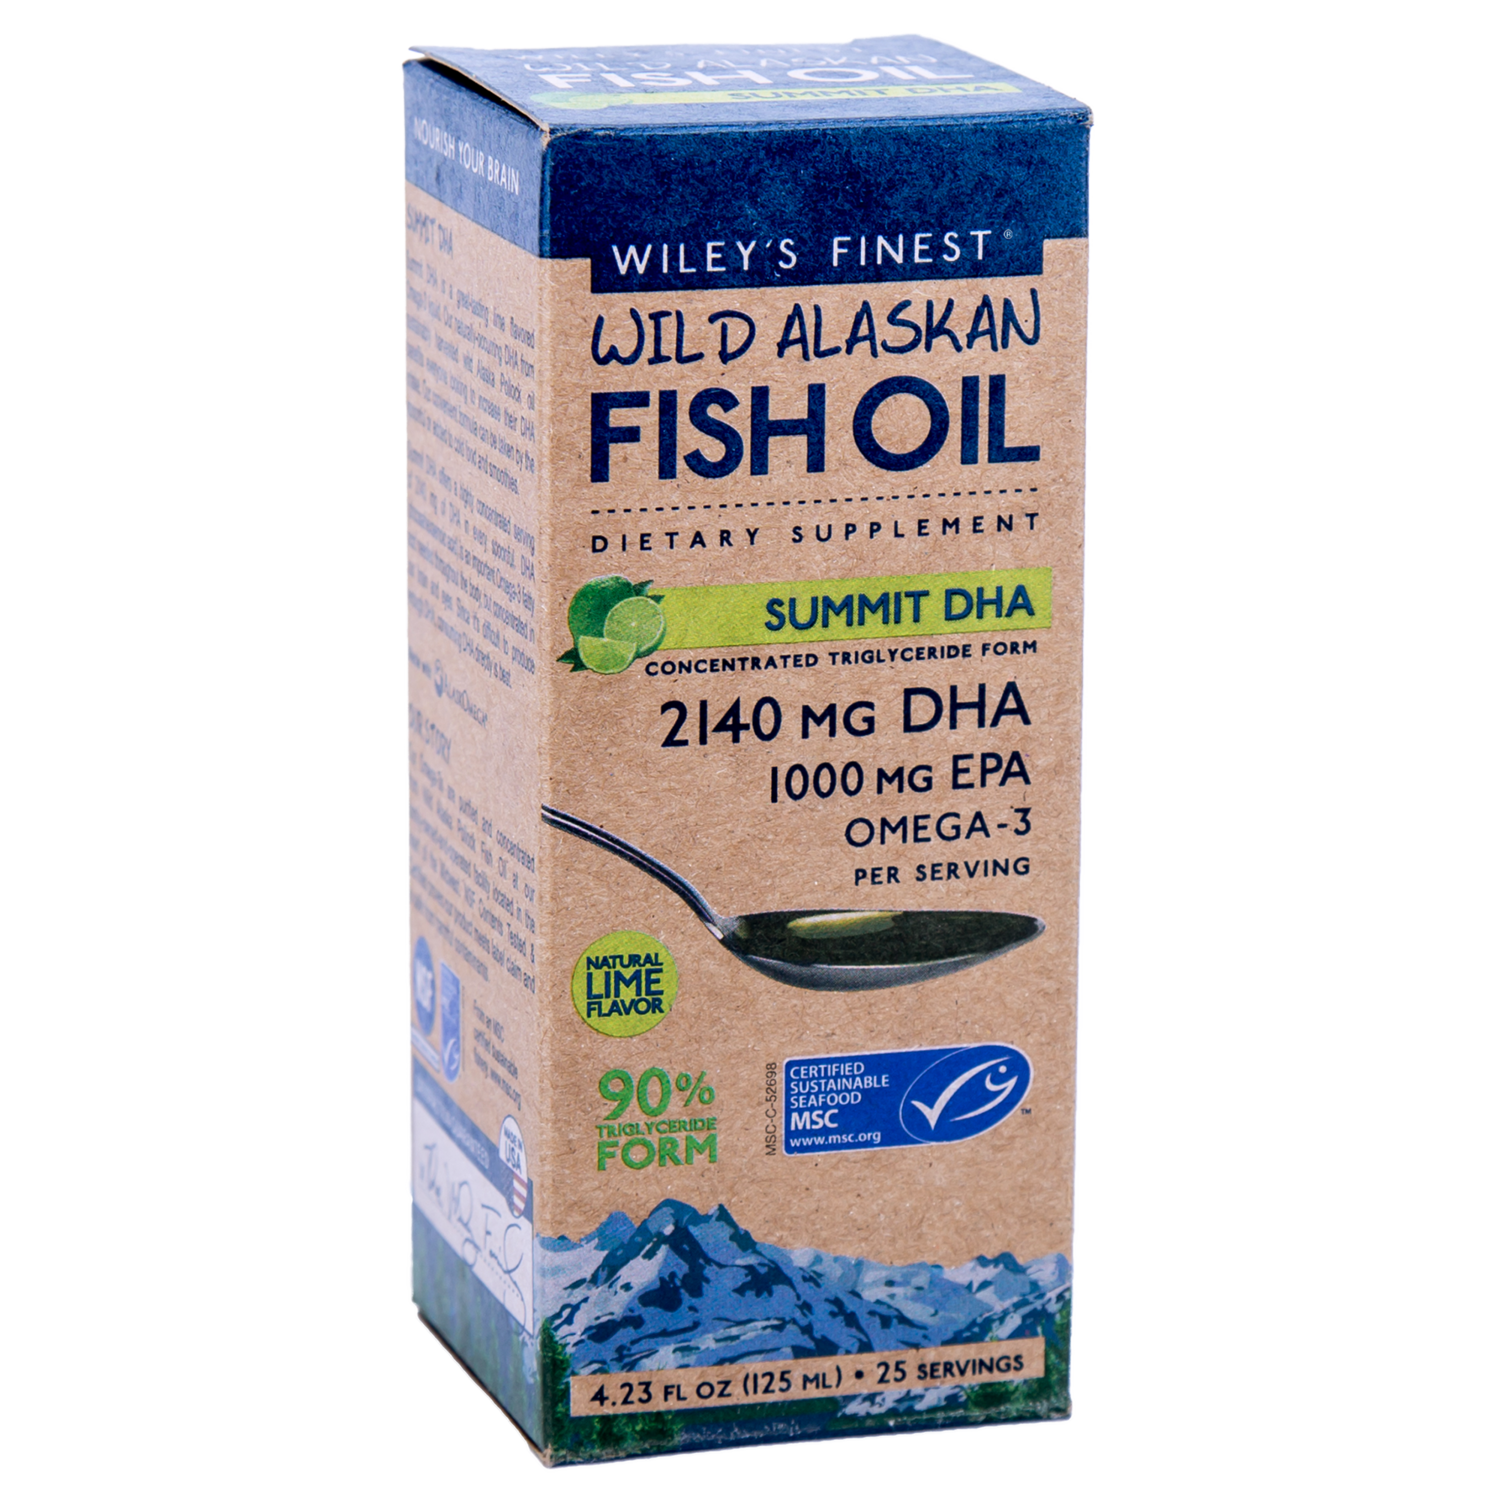 Wiley’s Finest Wild Alaskan Fish Oil Summit DHA Liquid